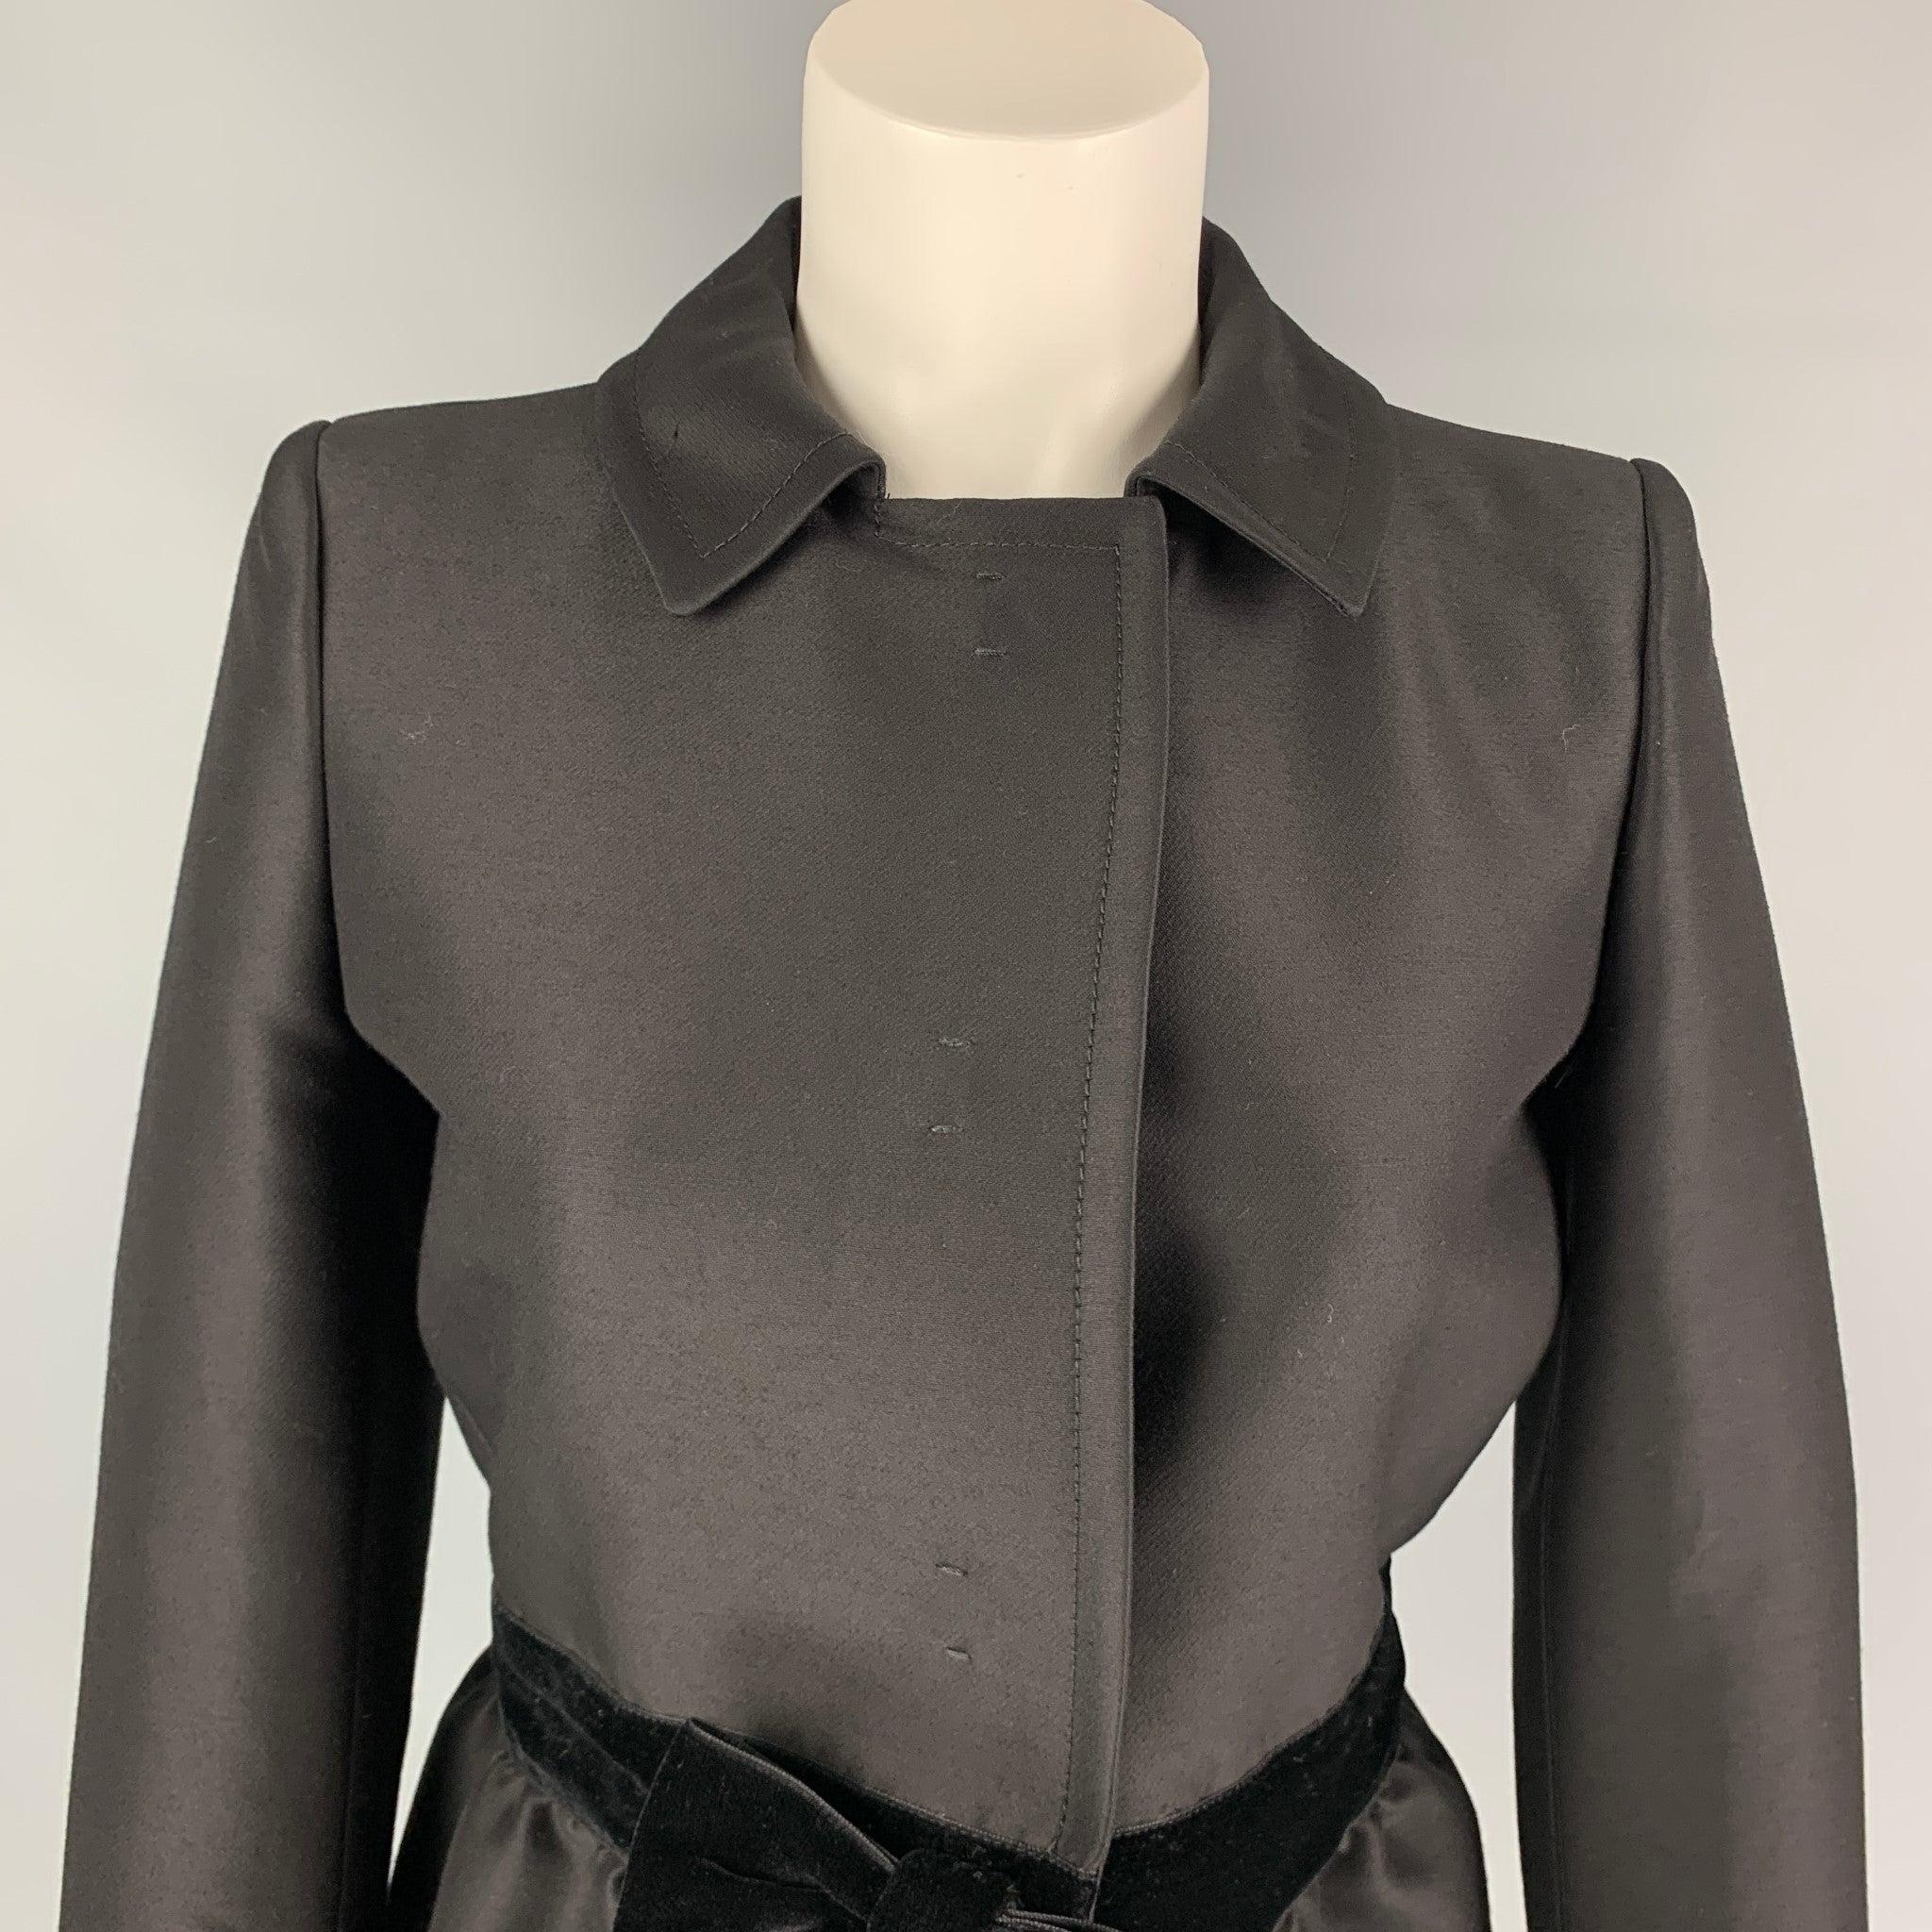 La veste GIAMBATTISTA VALLI est en laine et soie noire avec une doublure complète. Elle présente un nœud en velours, un col large et une fermeture à bouton-pression caché. Fabriqué en Italie. Nouveau avec étiquettes.  

Marqué :   42 

Mesures : 
